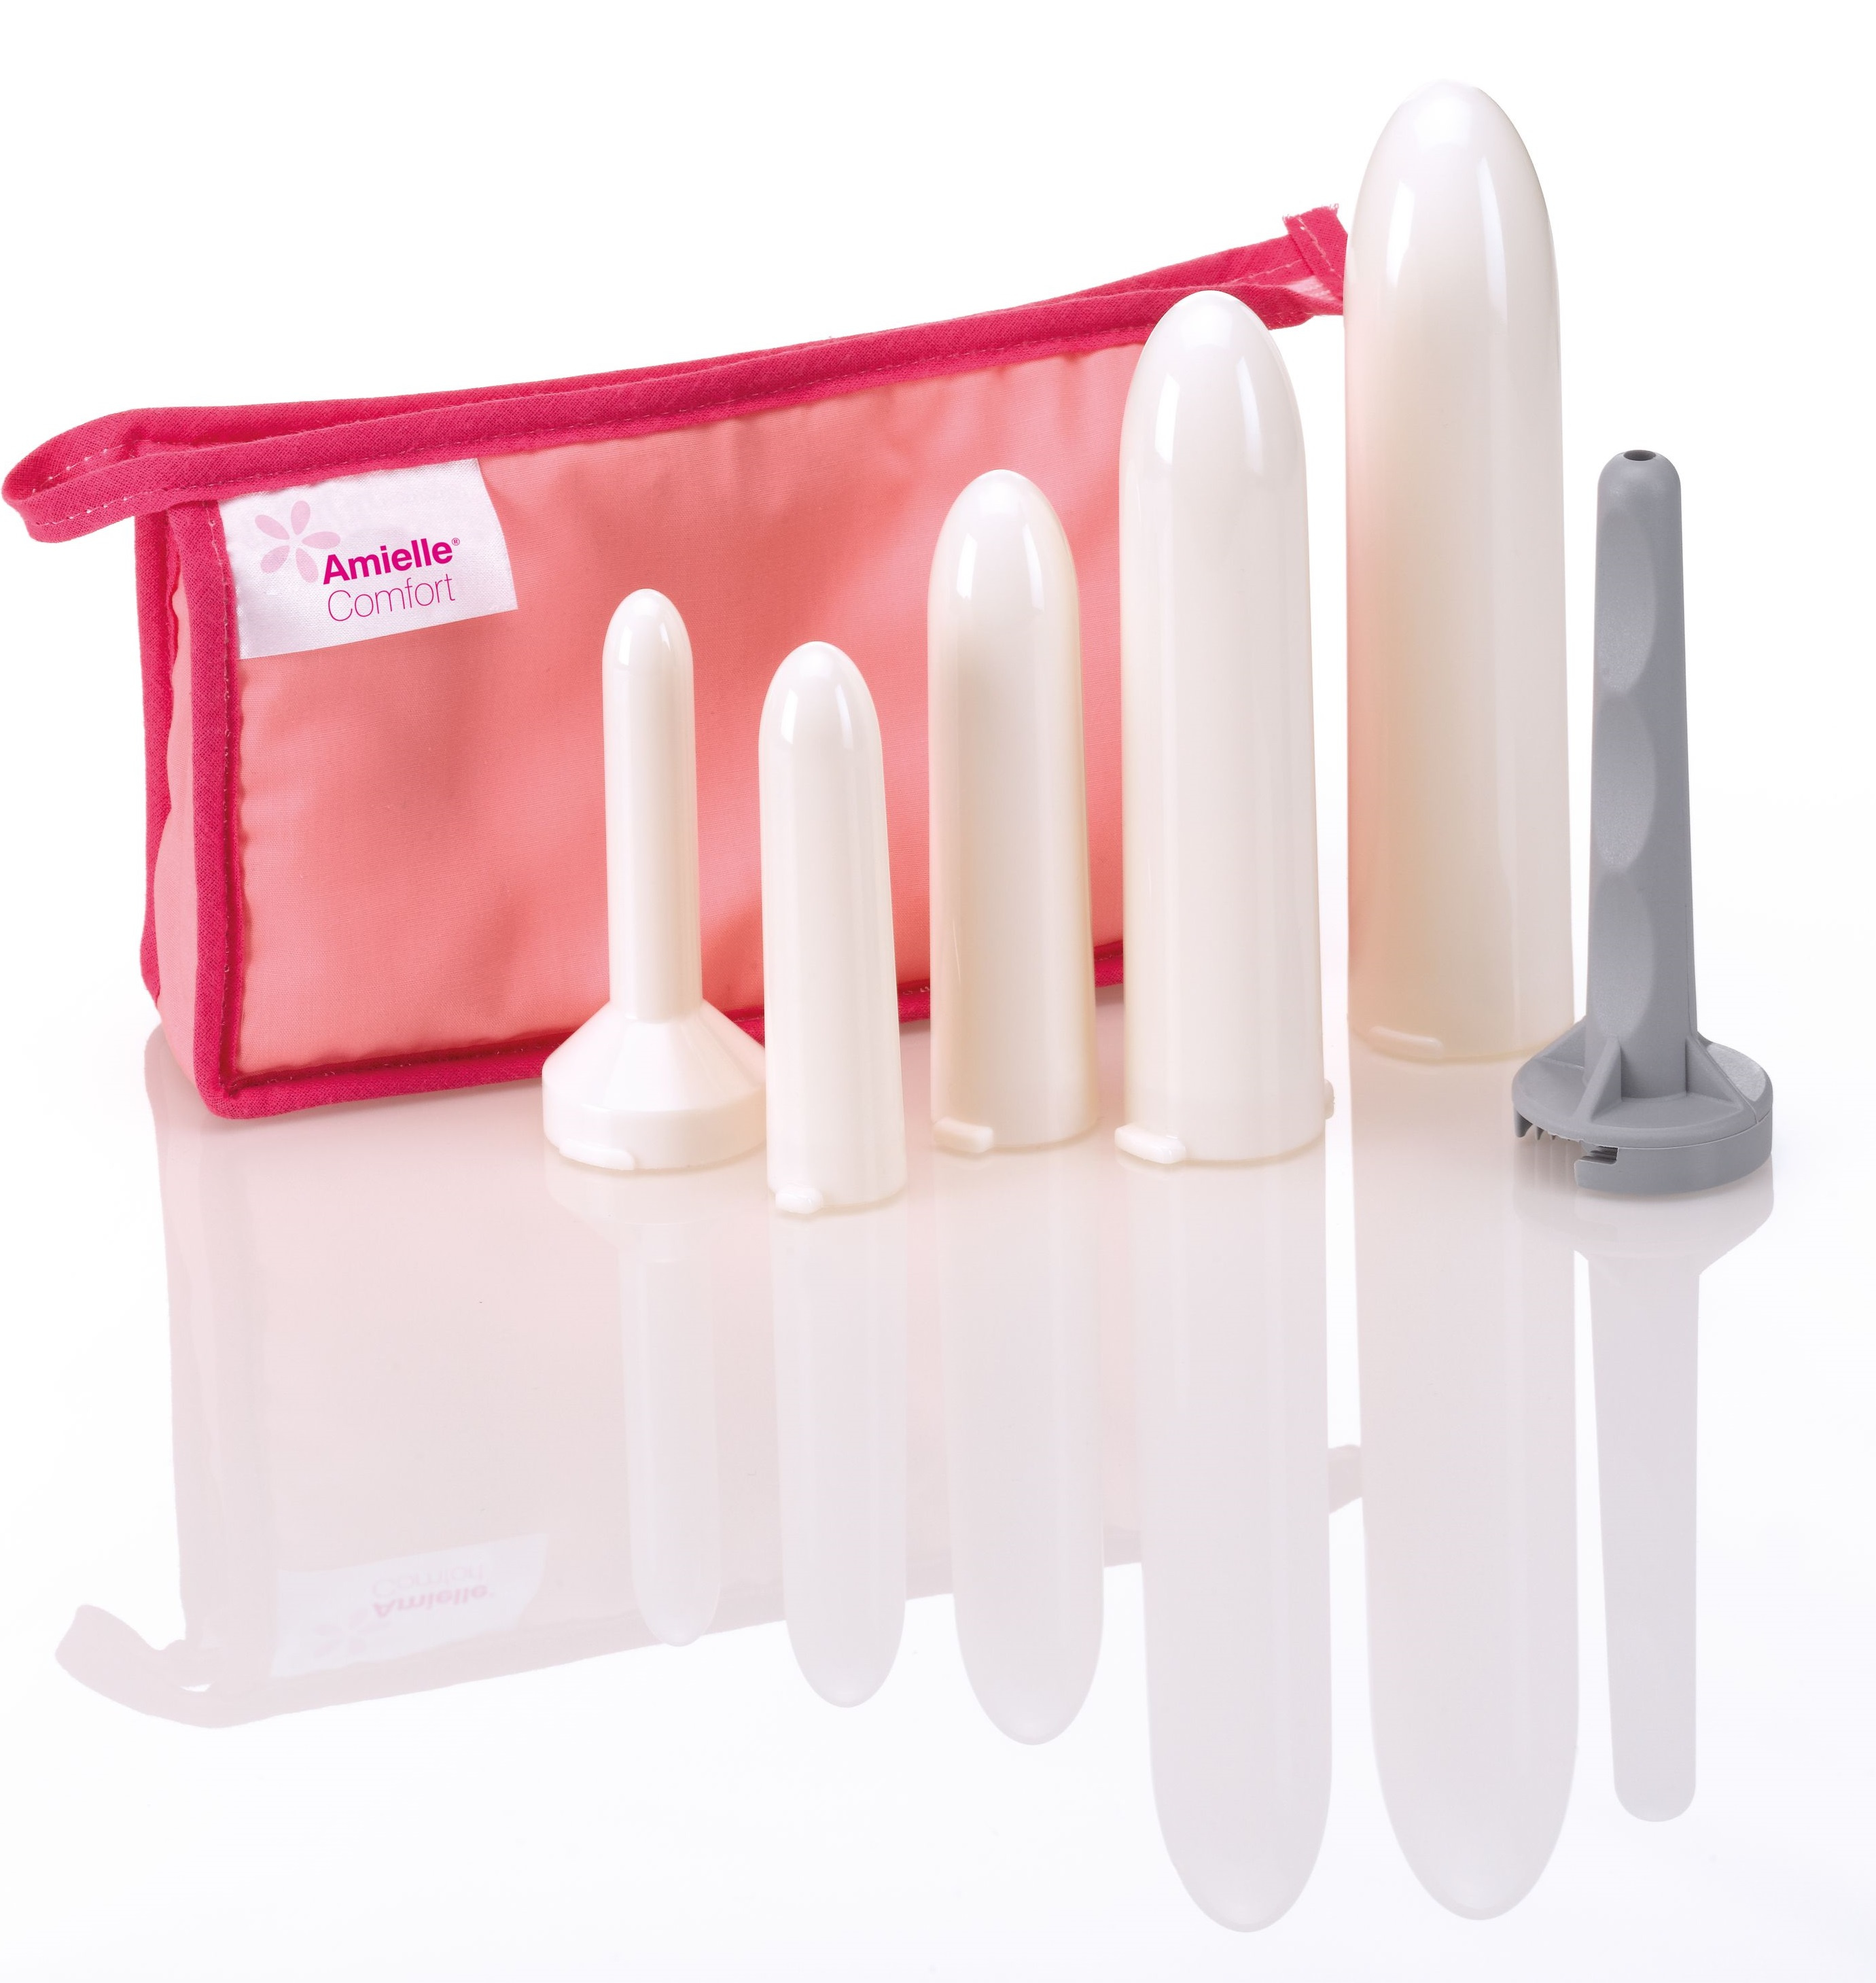 Amielle Comfort Vaginal Dilators Full Set image 0